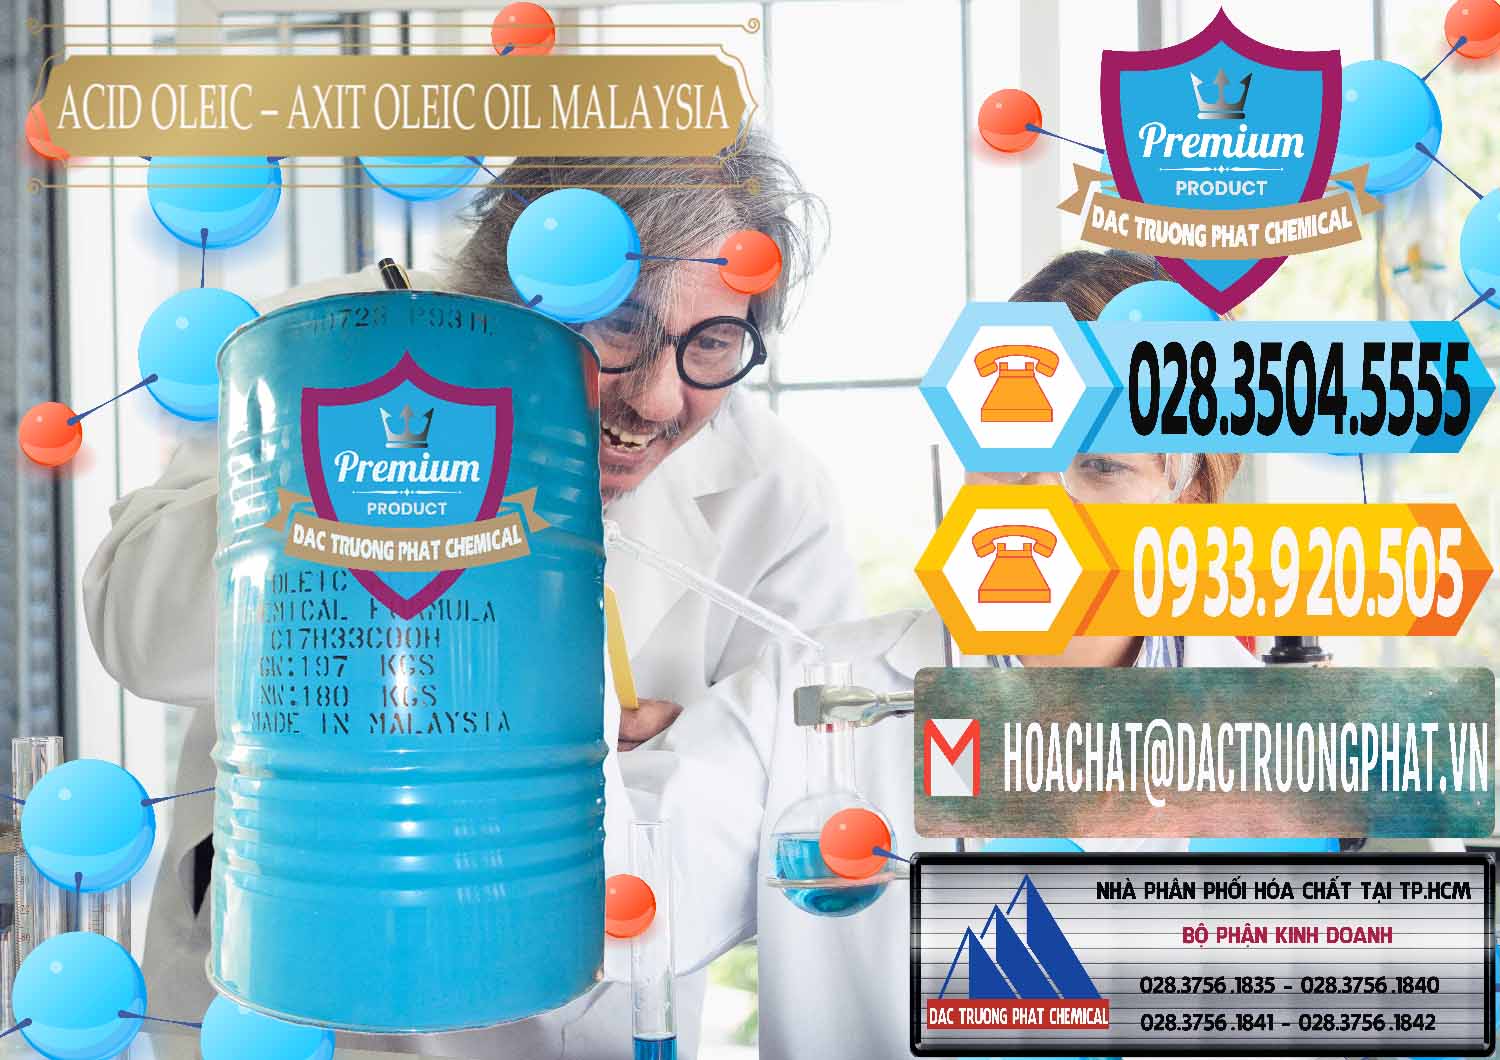 Công ty chuyên kinh doanh và bán Acid Oleic – Axit Oleic Oil Malaysia - 0013 - Chuyên phân phối - cung cấp hóa chất tại TP.HCM - hoachattayrua.net